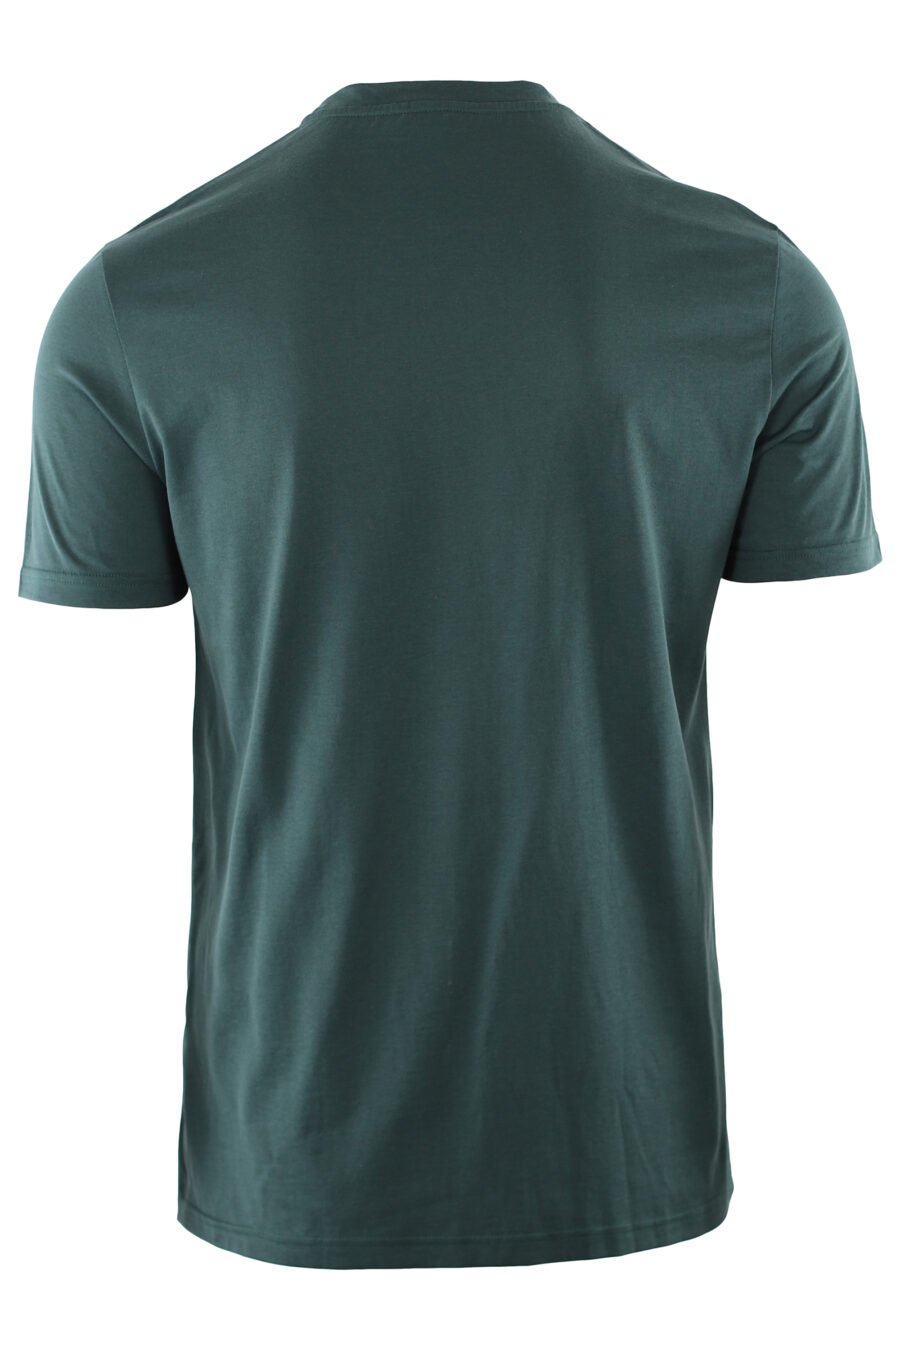 Camiseta verde oscura con logo blanco bordado - IMG 7406